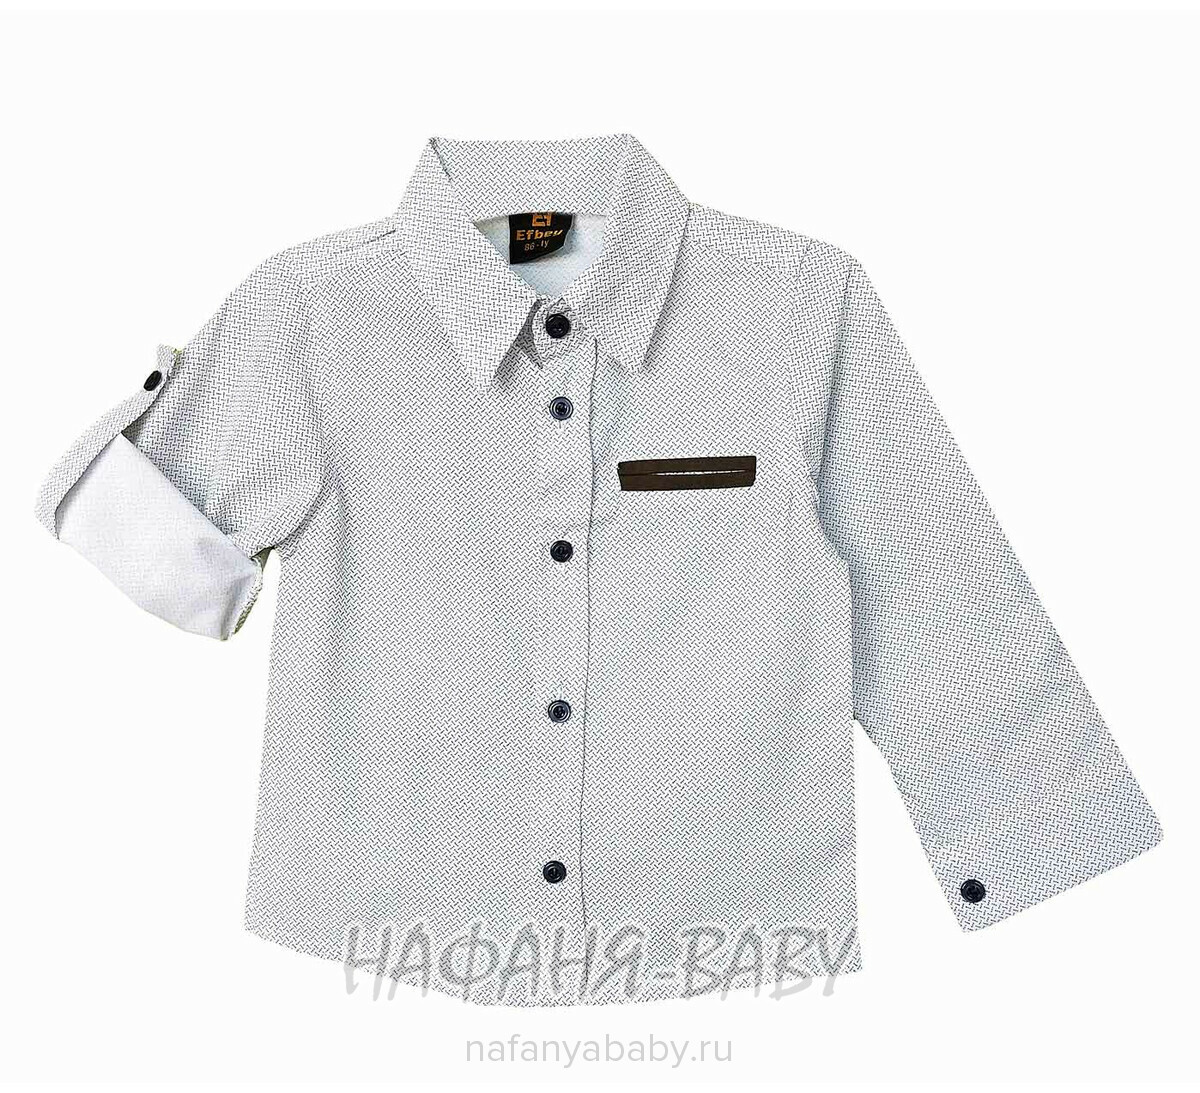 Детский костюм (рубашка + брюки) EFBEY арт. 3087, 1-4 года, цвет белый с хаки, оптом Турция